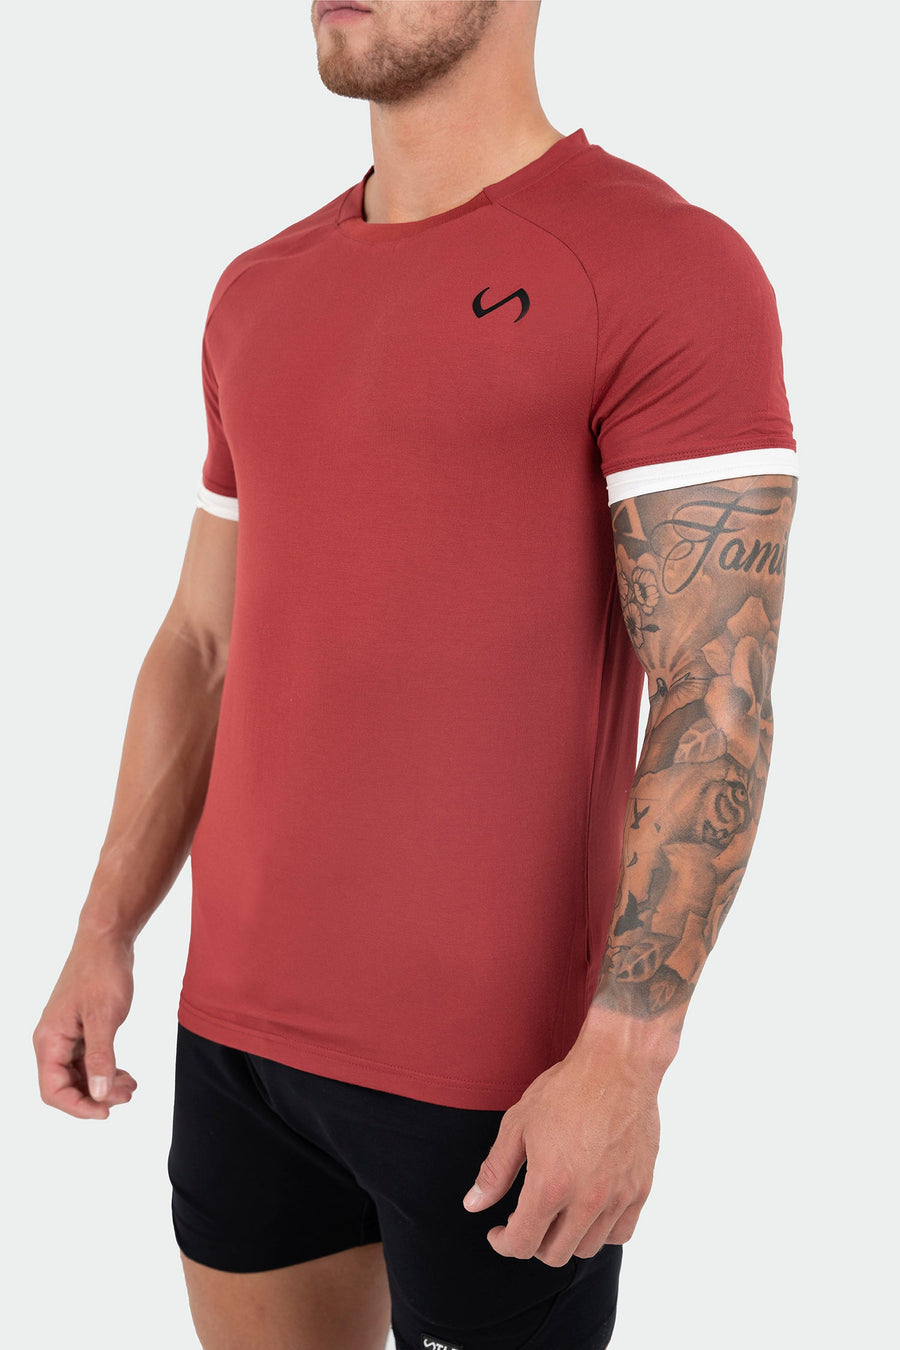 TLF Air-Flex Classic Tee - Mens Raglan Shirt - Red - 2